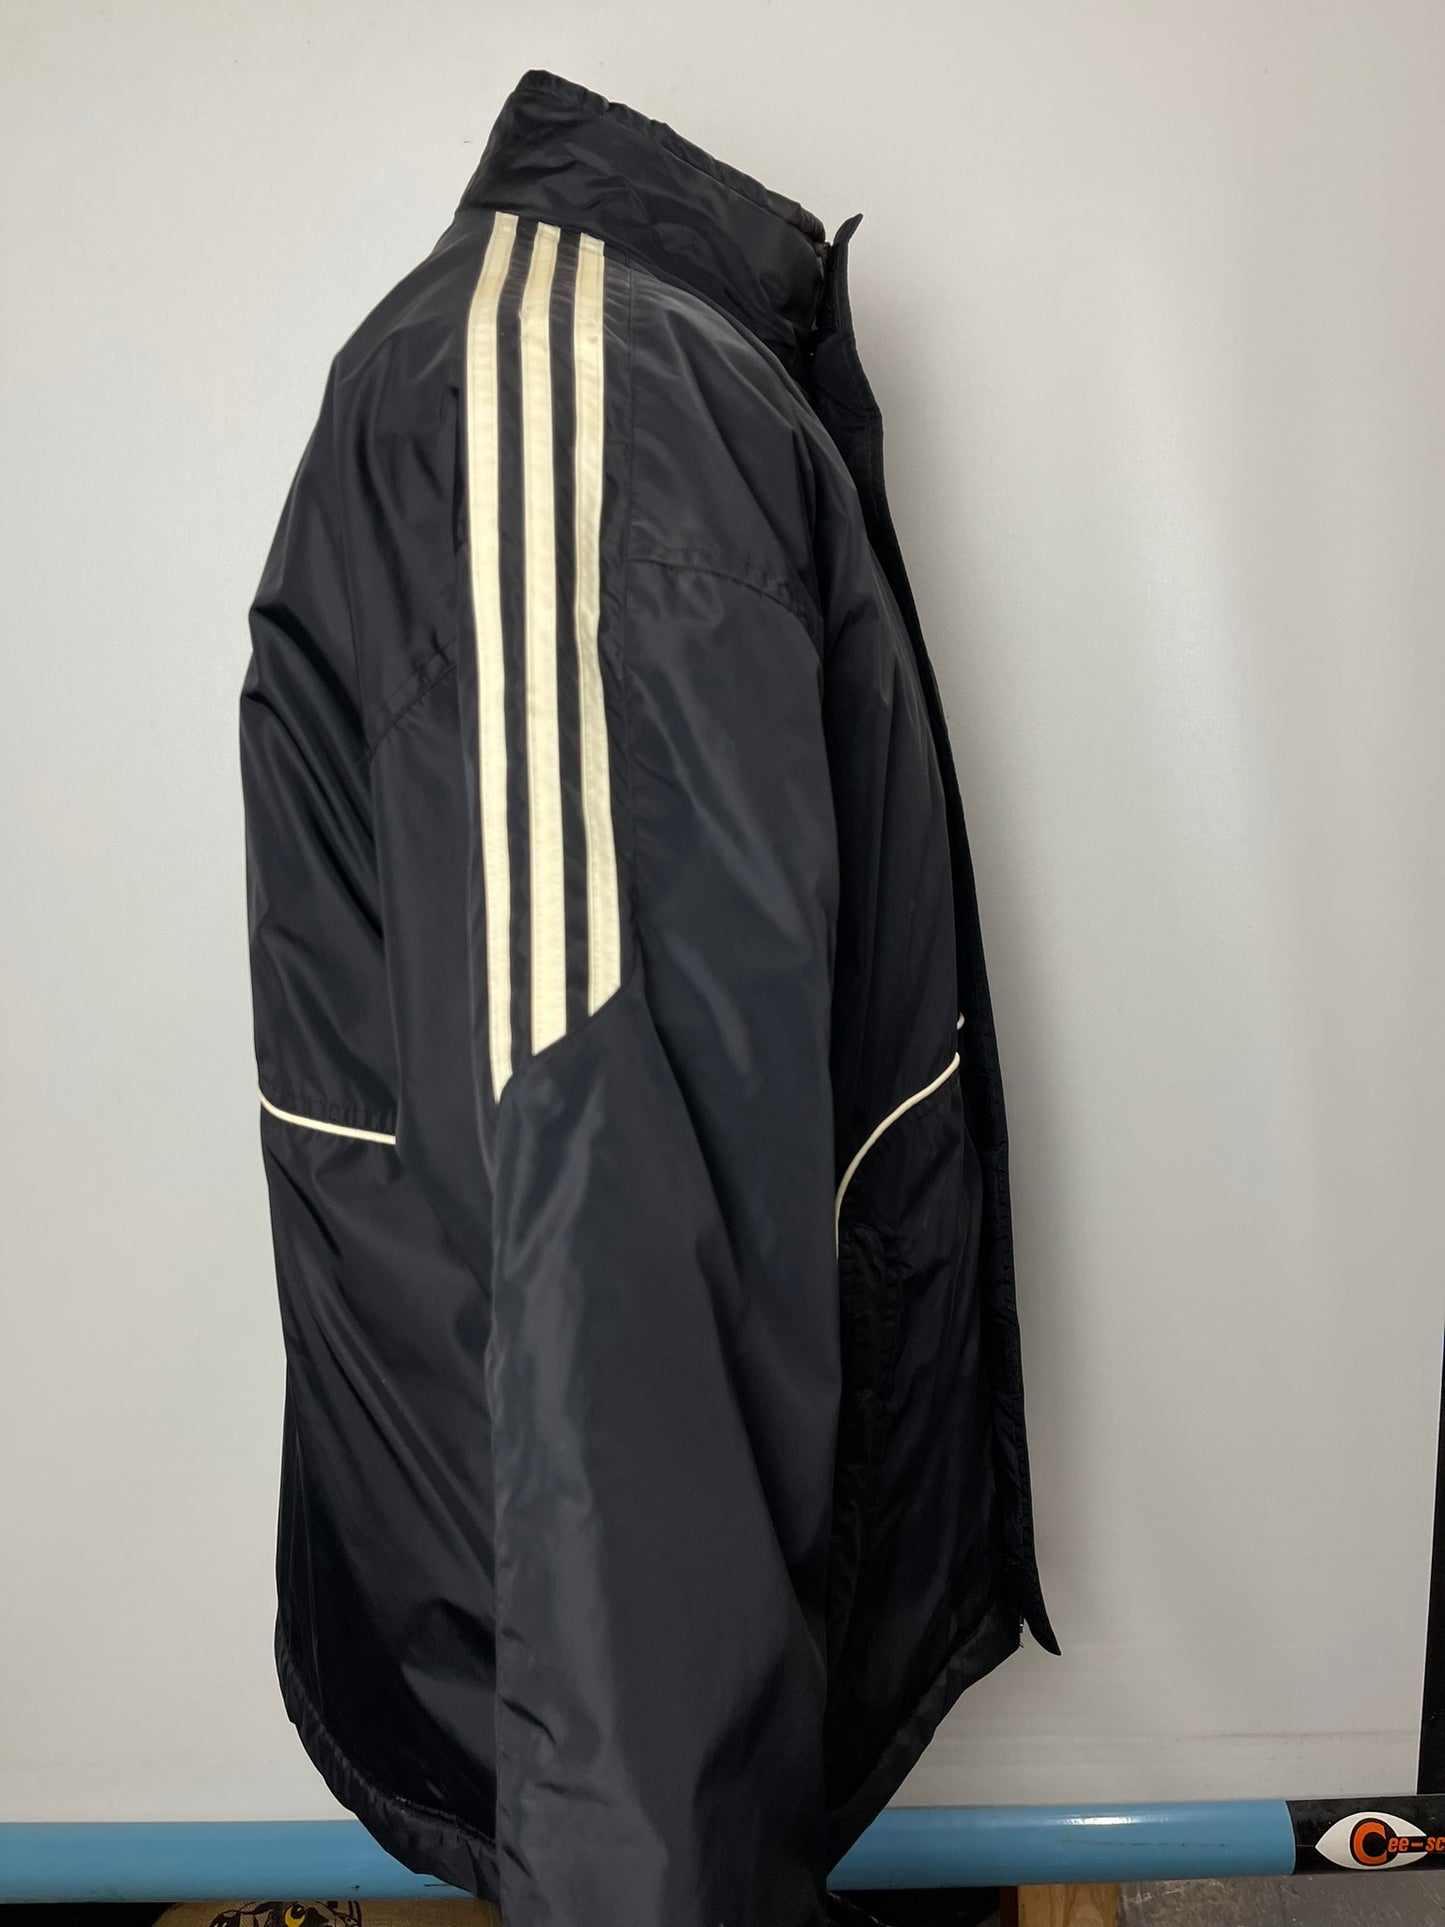 Adidas Black Puffer Jacket Size 38/40